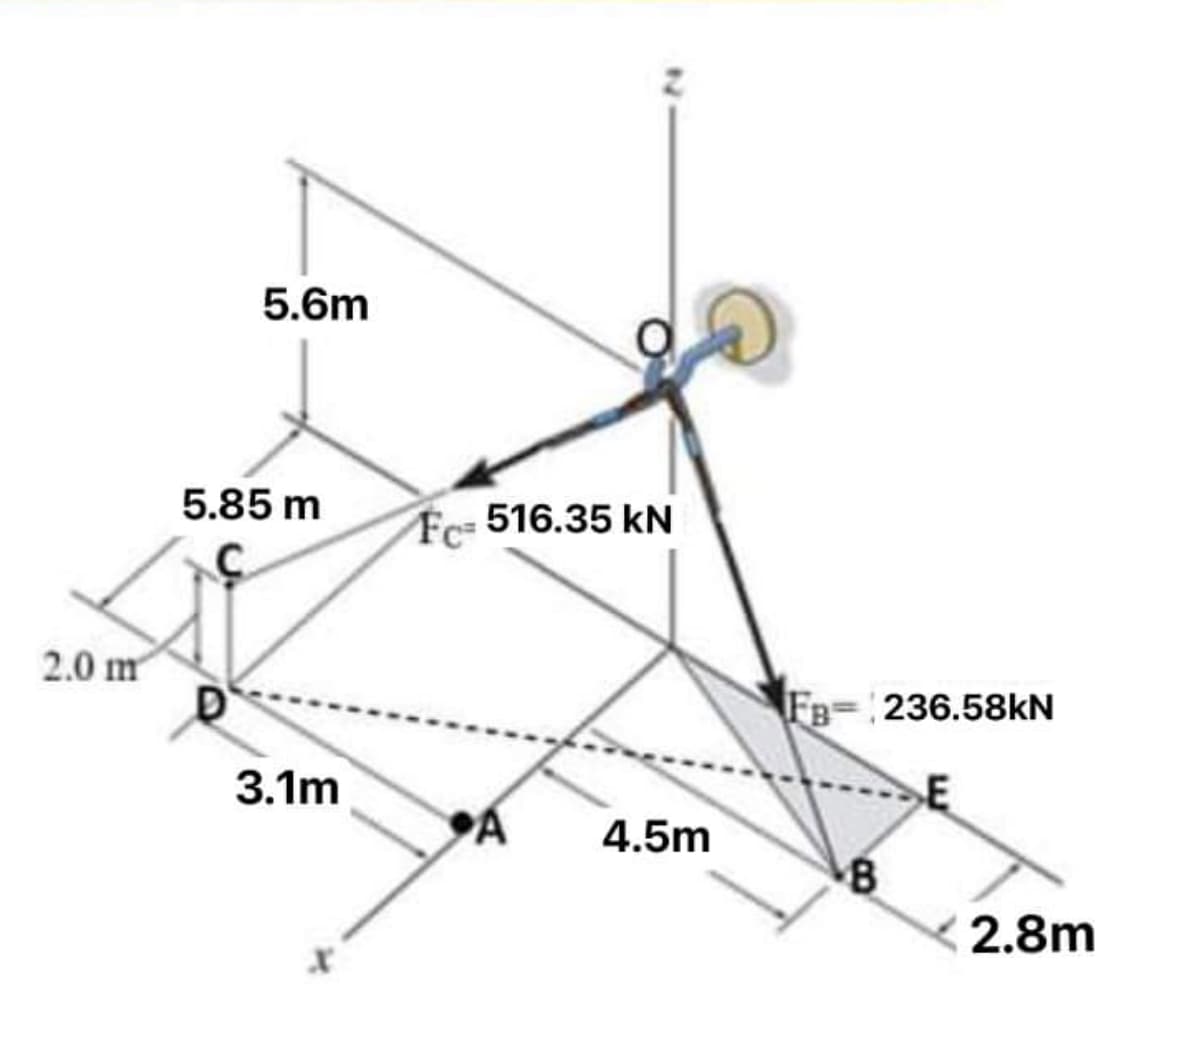 5.6m
5.85 m
Fc 516.35 kN
2.0 m
FB-:236.58KN
3.1m
E
4.5m
8
2.8m
